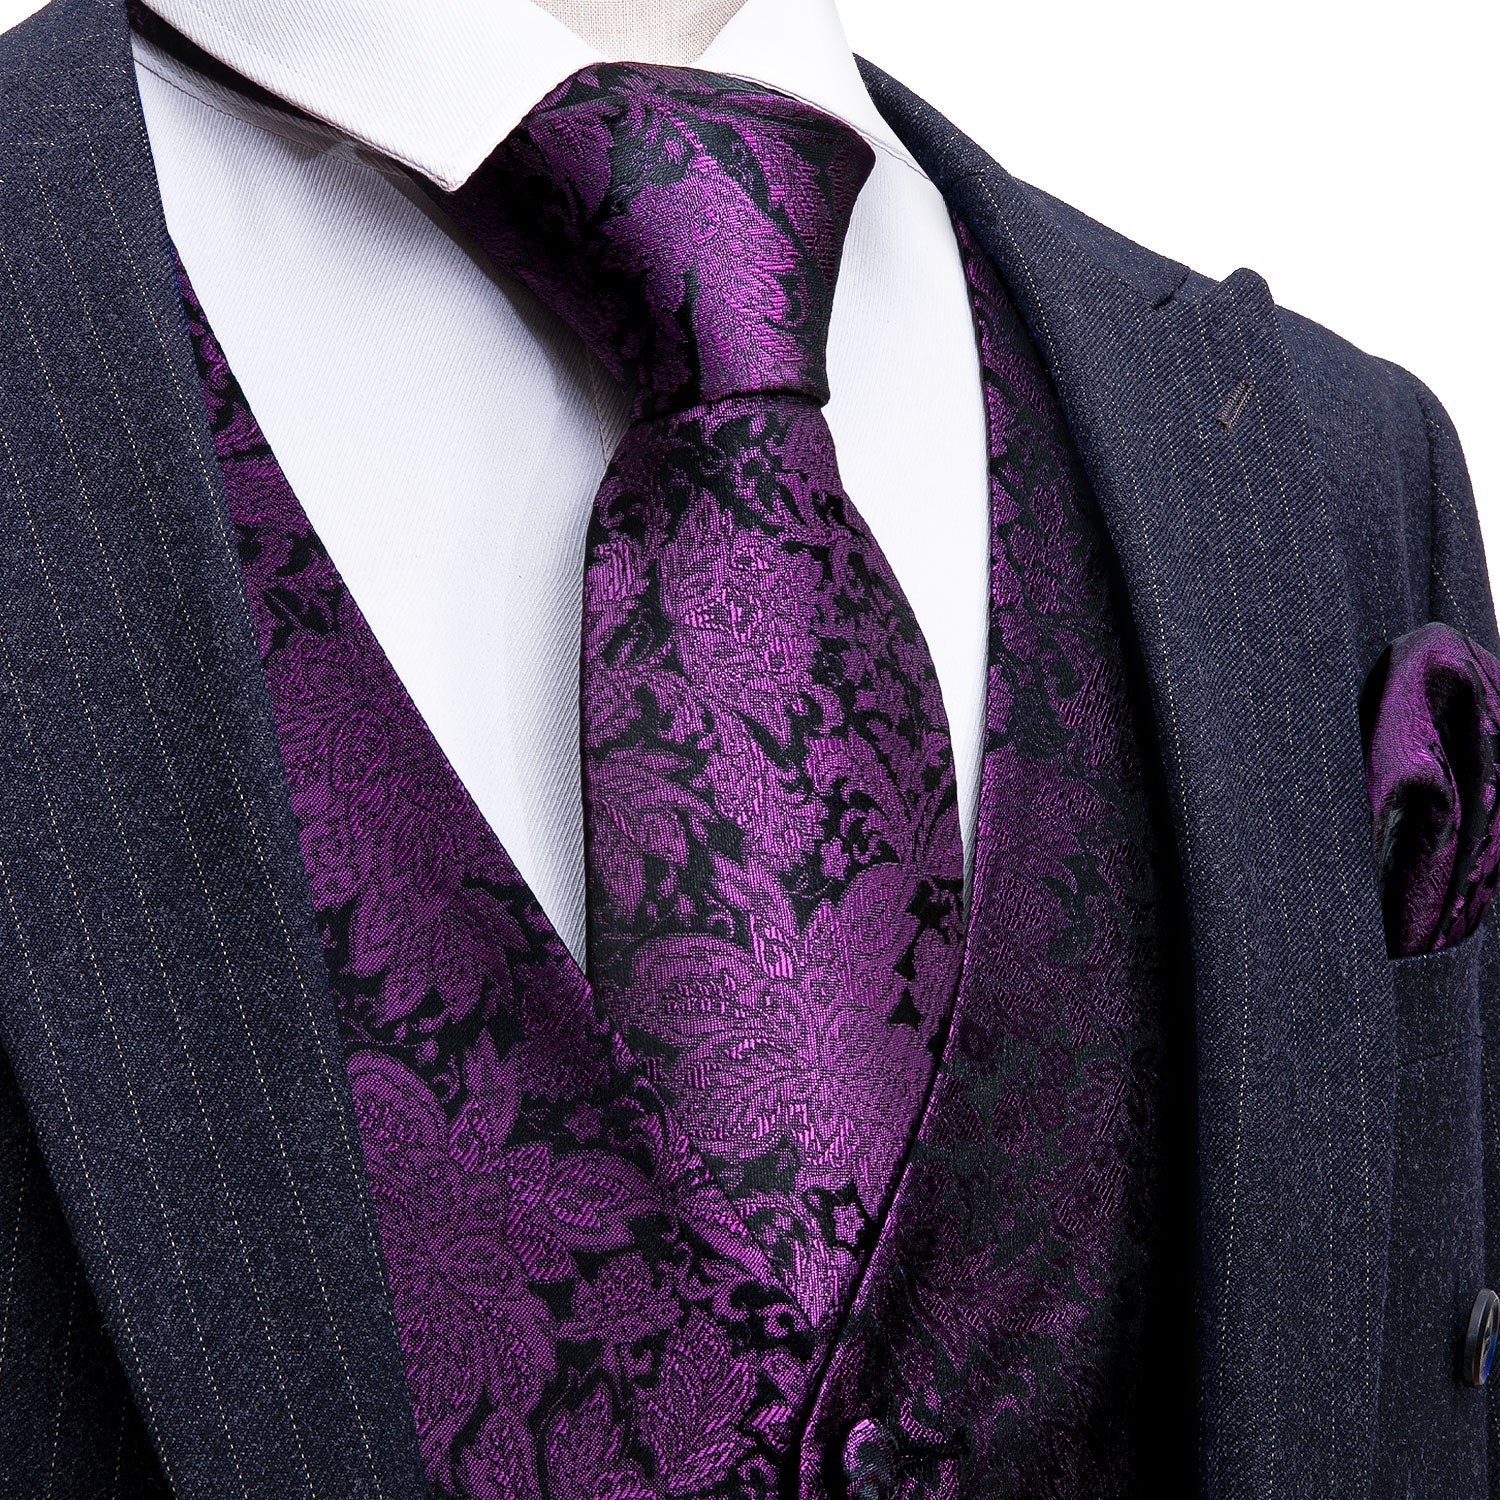 Barry Wang purple vest Men's Purple Floral Vest Necktie Set for Men